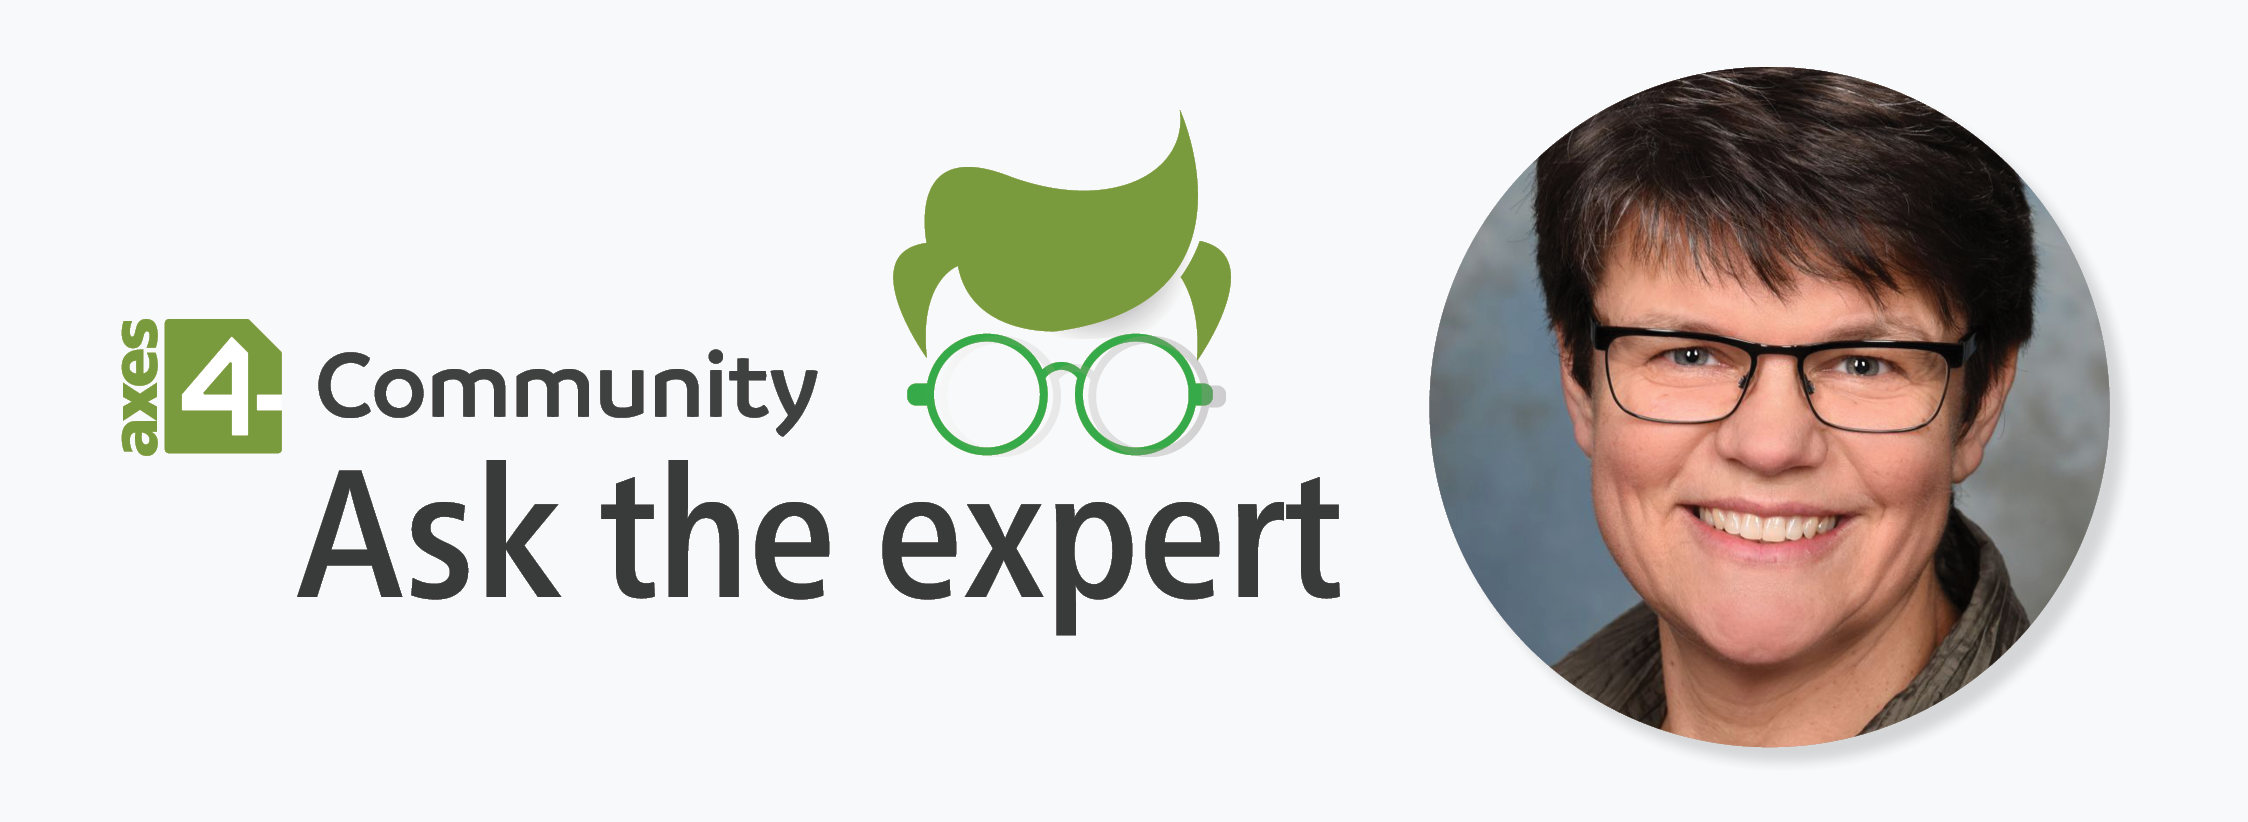 Links: das axes4-Logo, daneben steht geschrieben: Community. In der Mitte, in großen Buchstaben: Ask the expert. Über dem Wort "Expert" befindet sich ein Icon mit grüner Brille und grünen, kurzen Haaren. Auf der linken Seite ist ein Foto von Birgit Peböck.